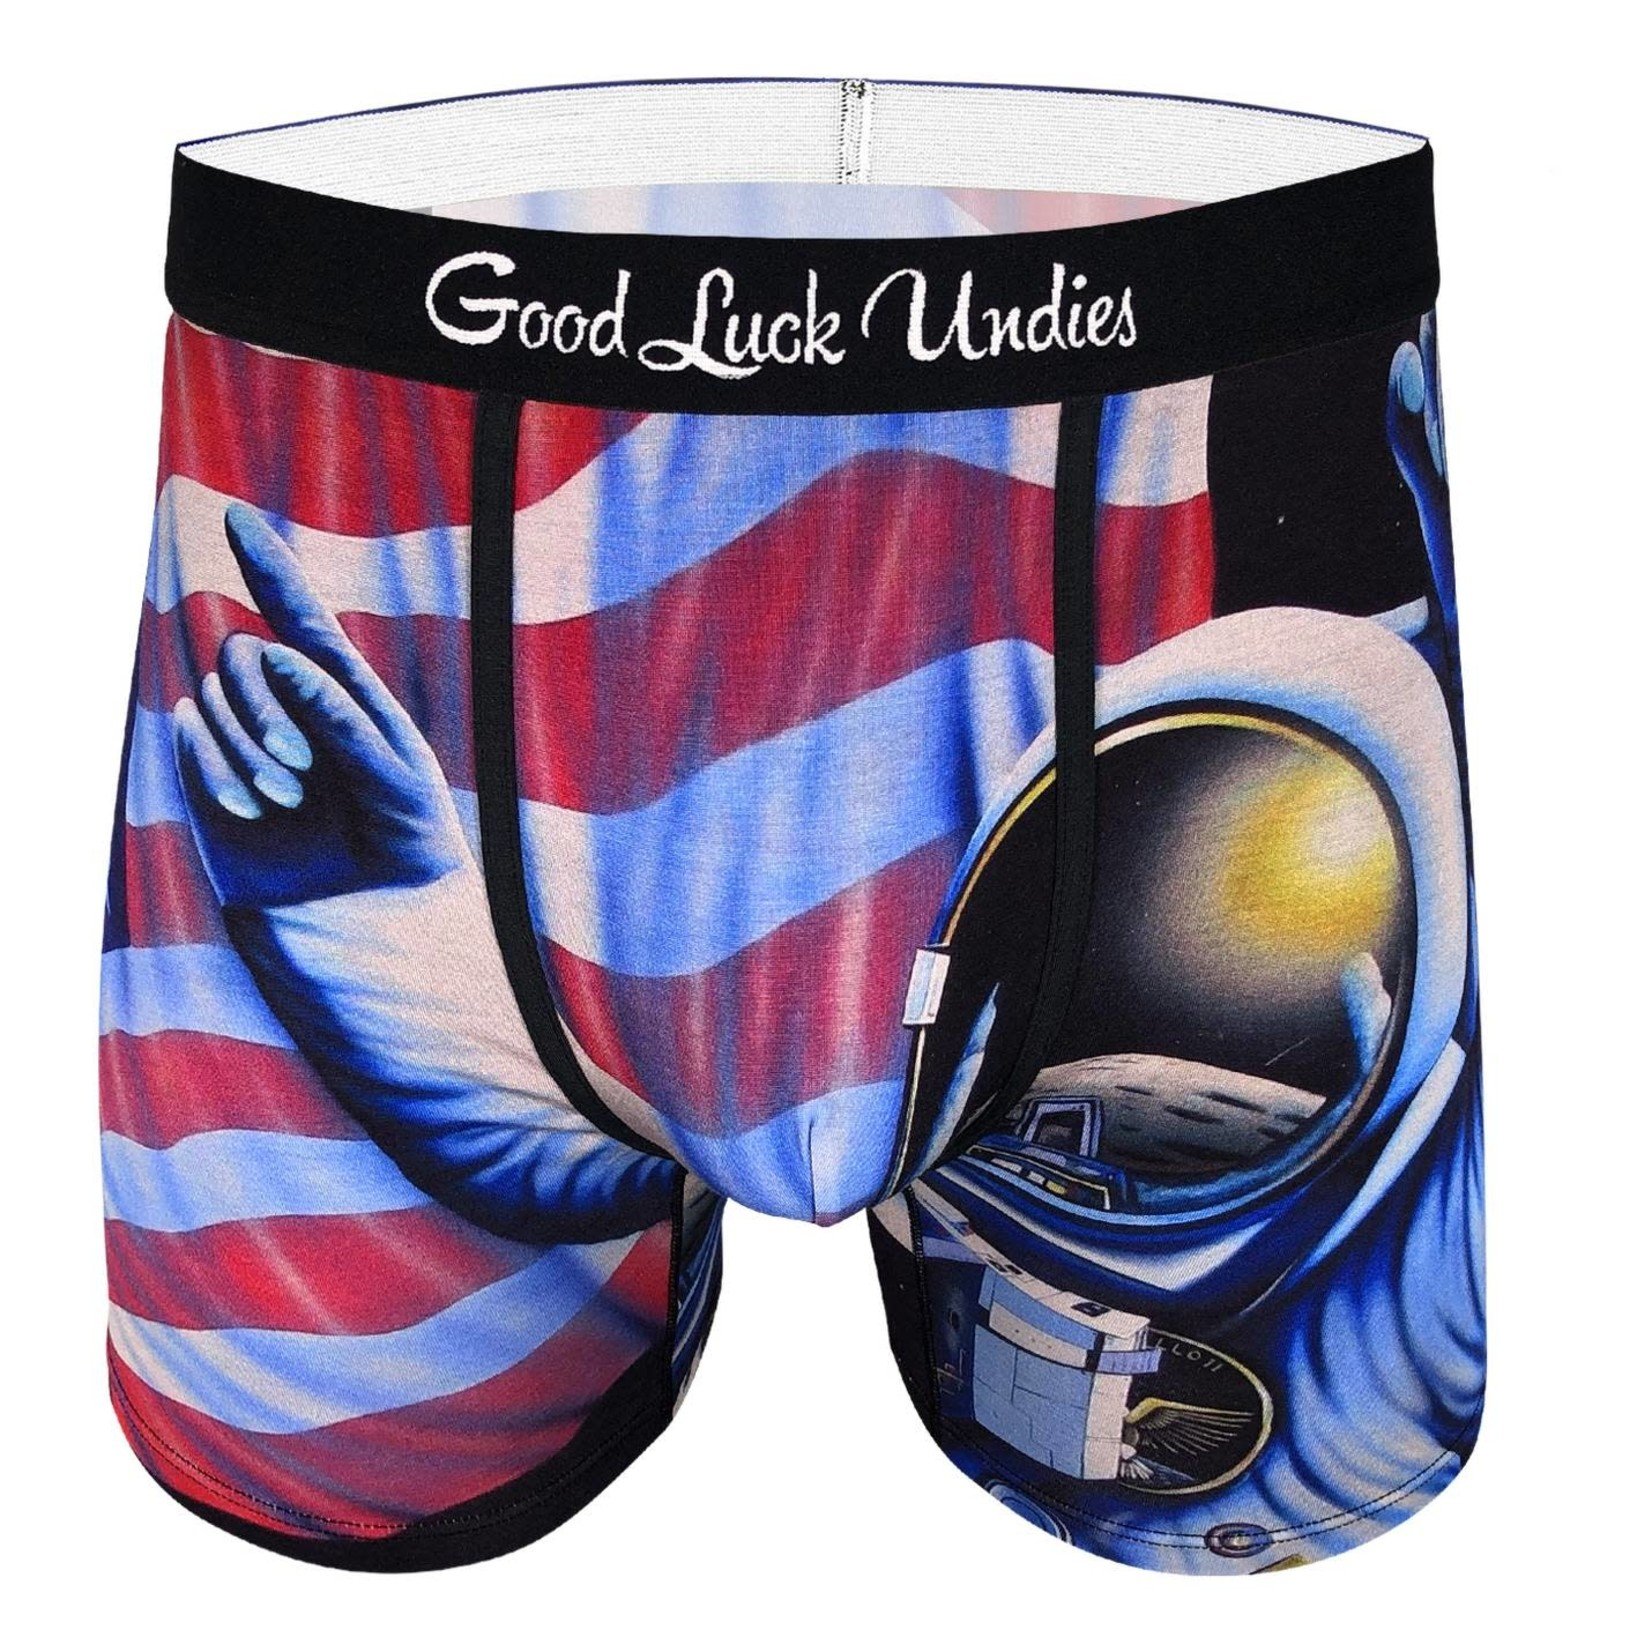 Astronaut Boxer Brief Underwear by Good Luck Undies - The